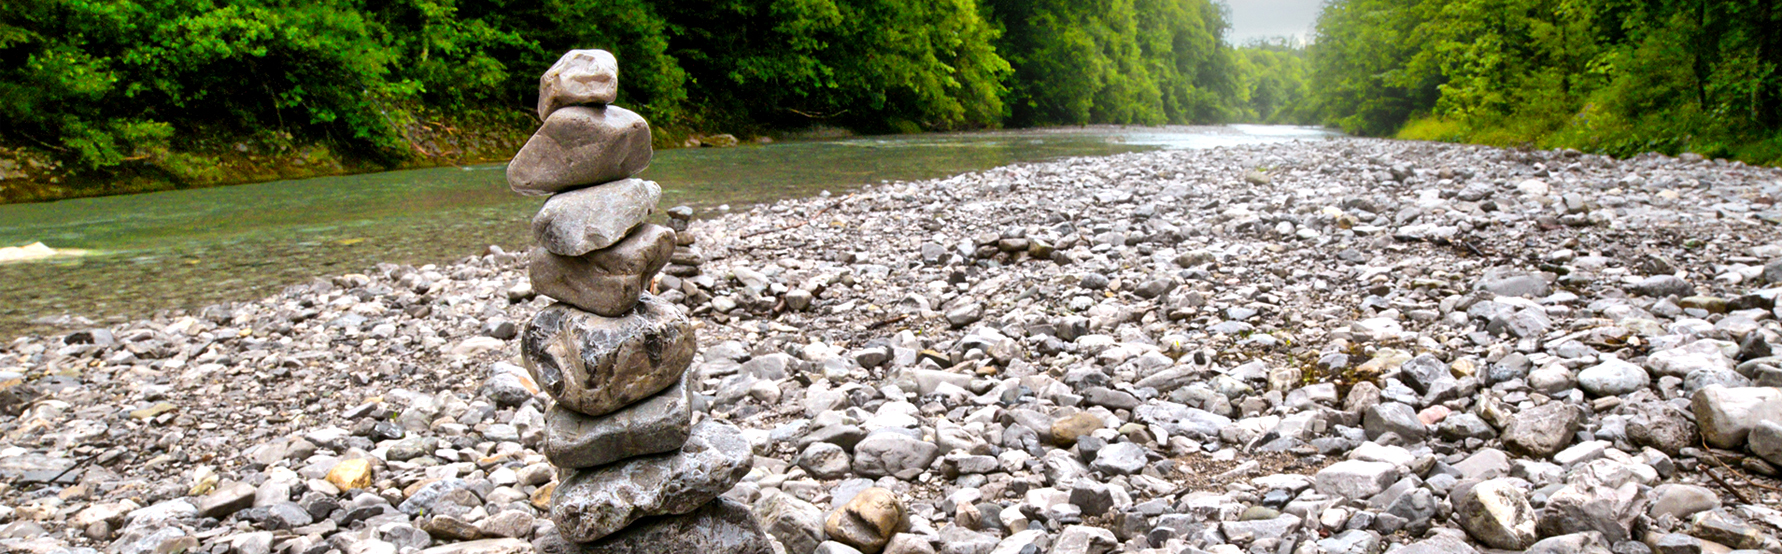 Imagen de rio con piedras verticales en estilo Zen